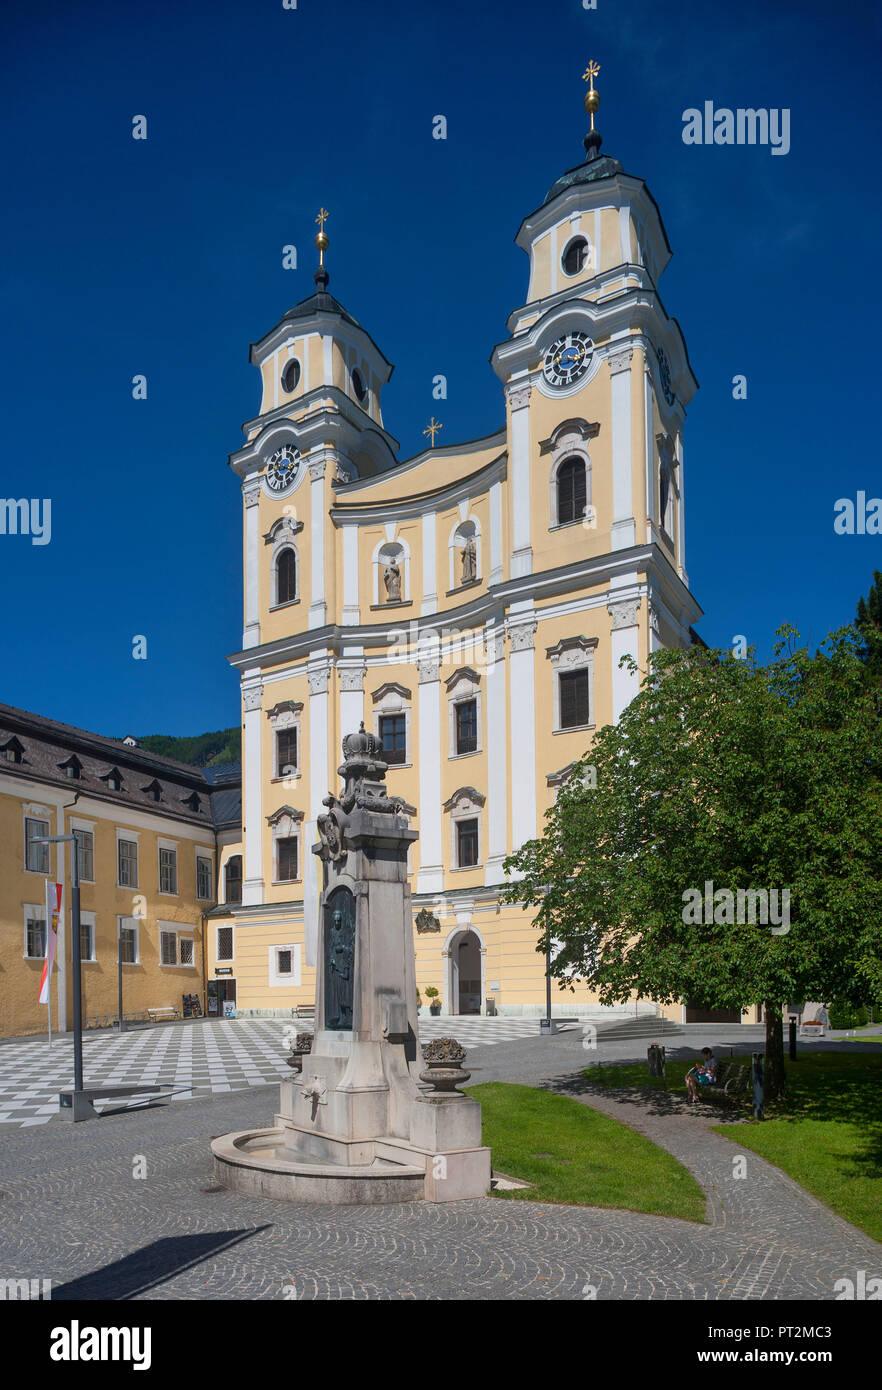 Austria, Upper Austria, Salzkammergut, Mondsee, Market Square, Basilica of Saint Michael, Stock Photo